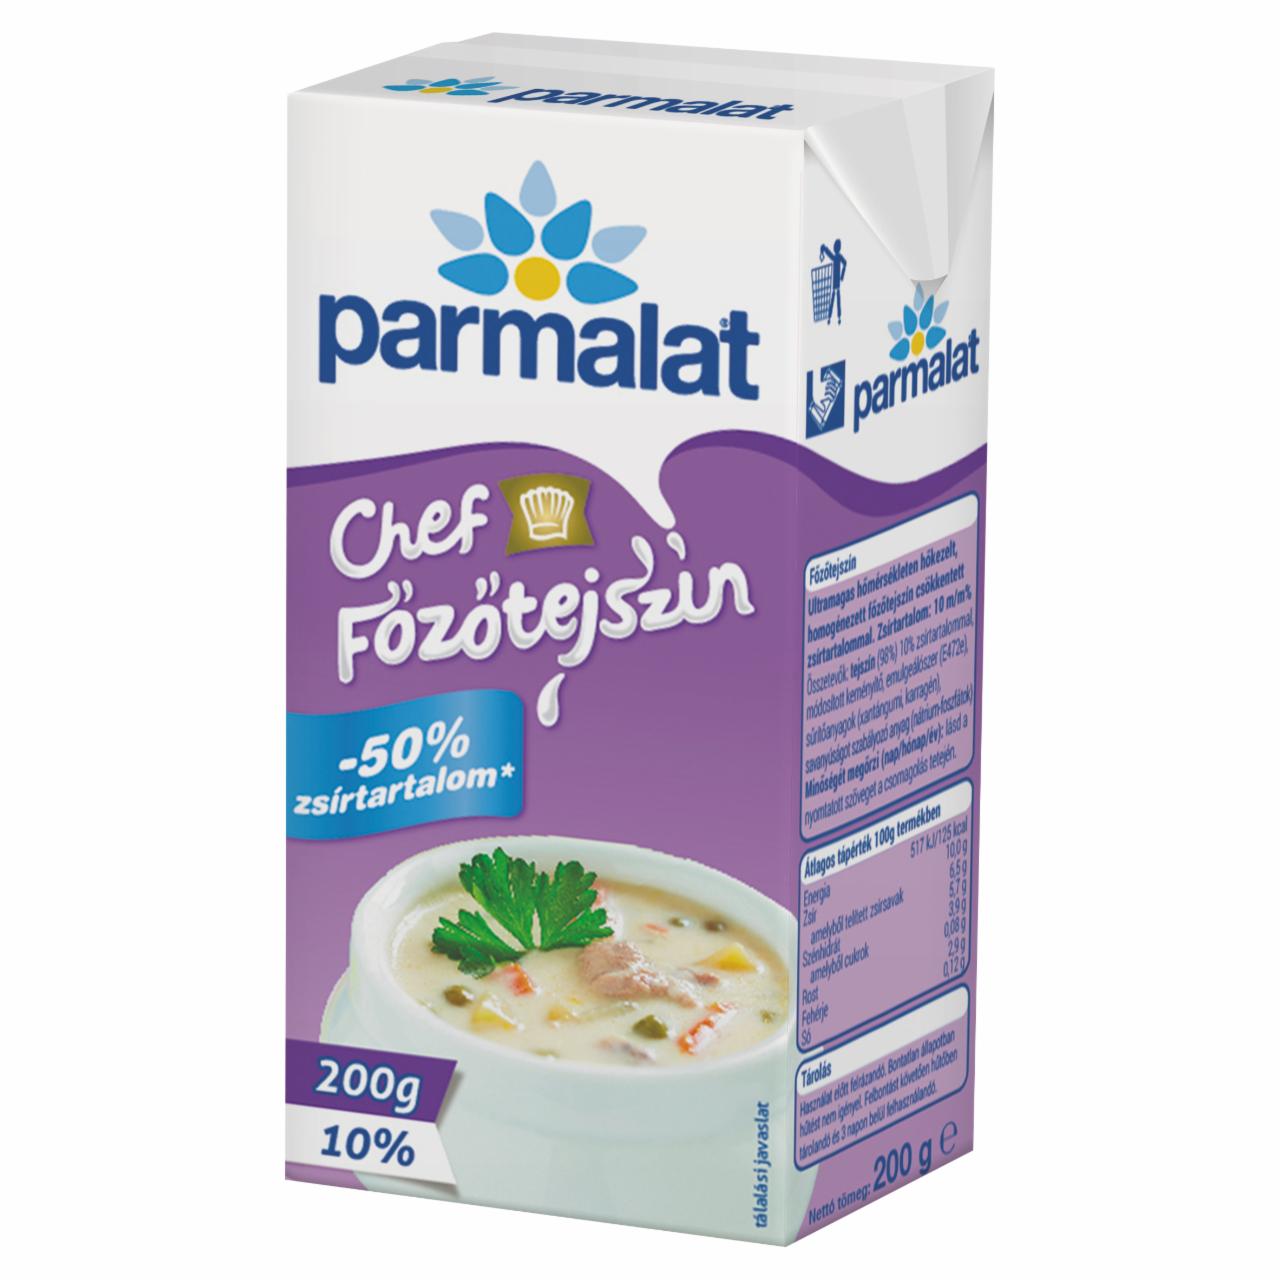 Képek - Parmalat Chef UHT főzőtejszín 10% 200 g